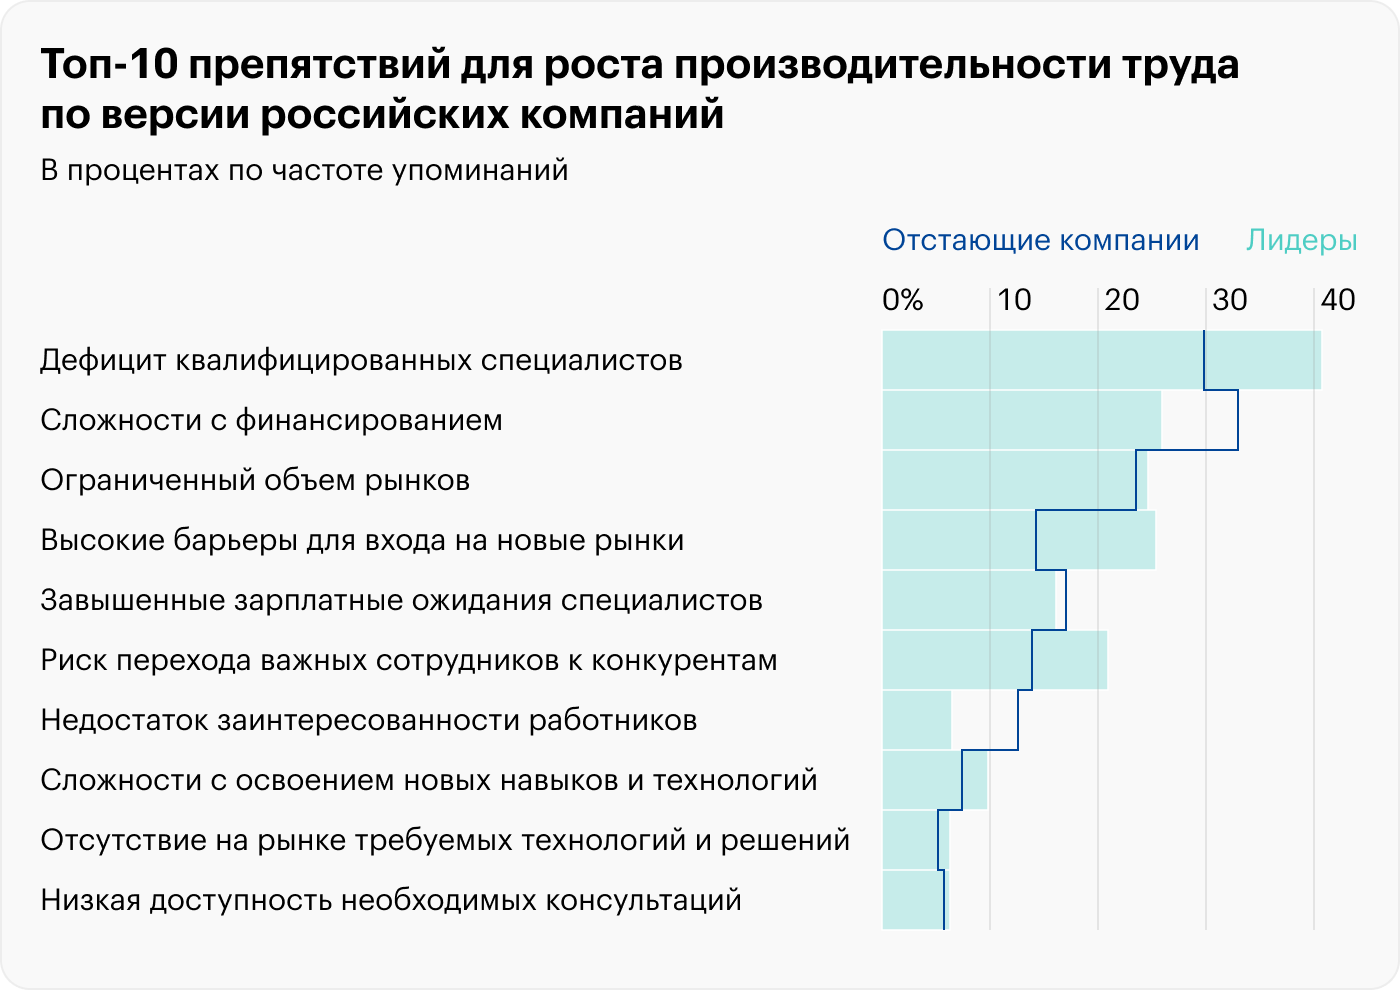 Резкое снижение: почему в России упала производительность труда и как ее повысить